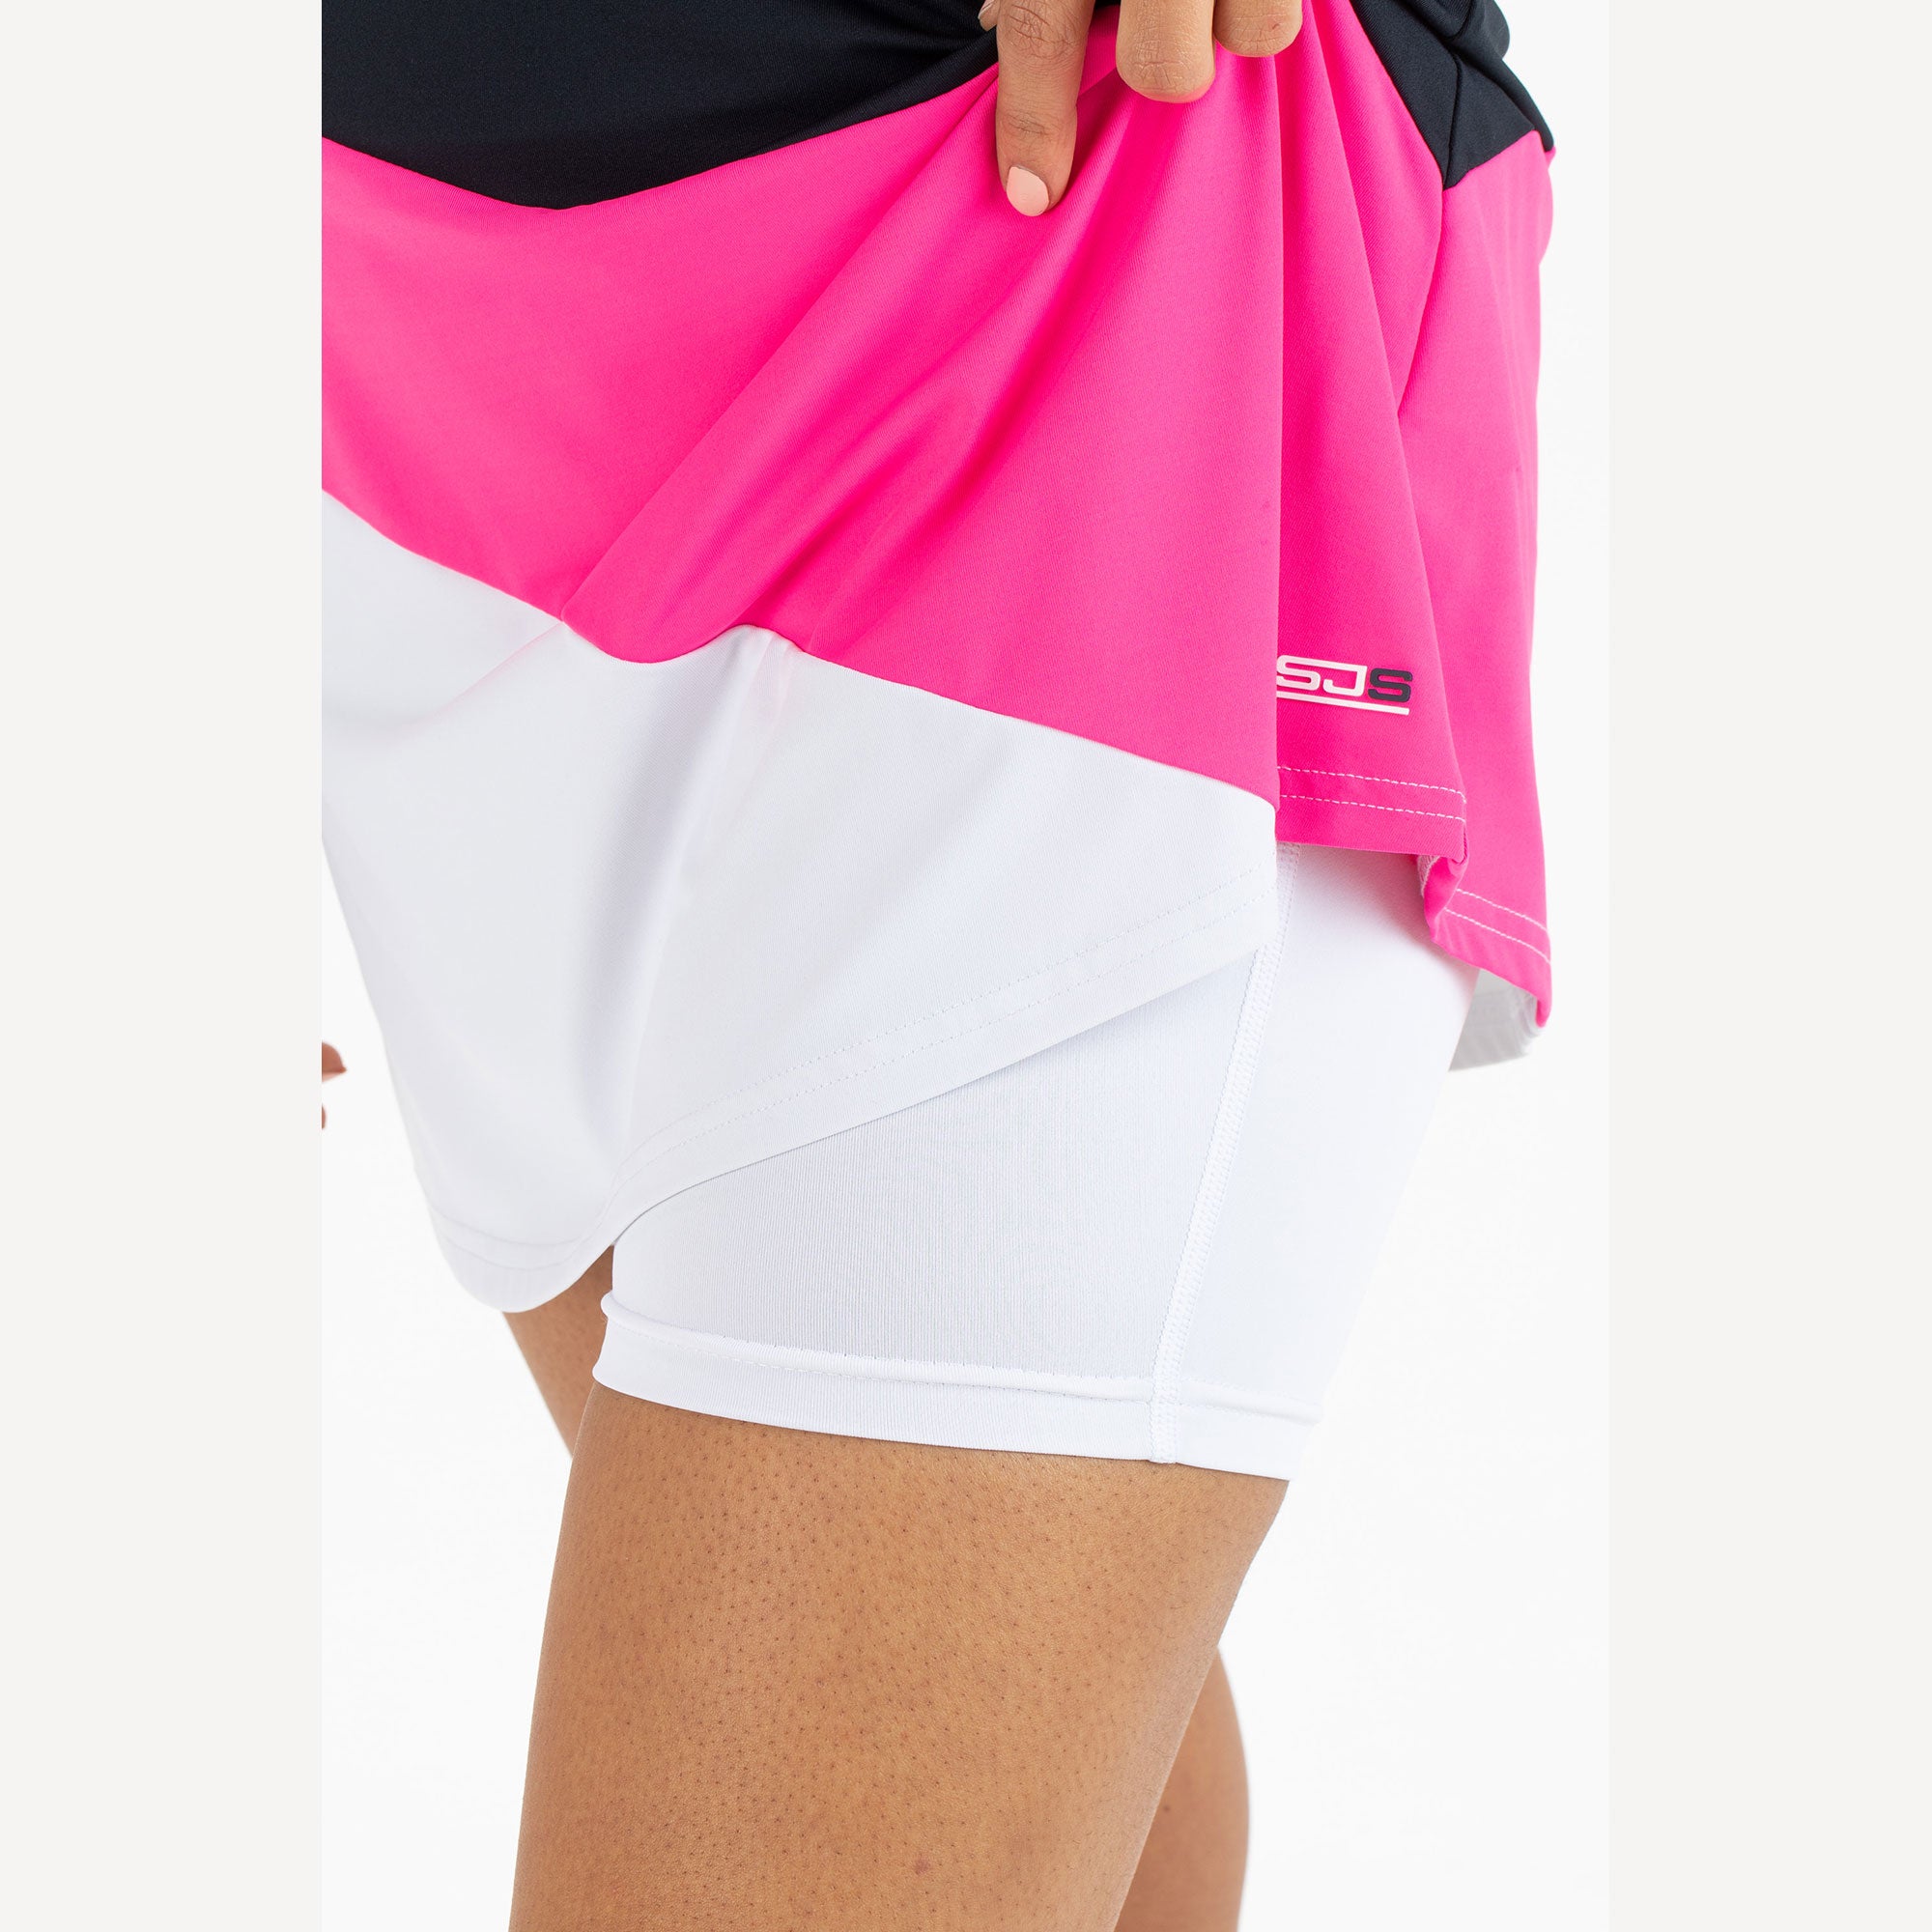 Sjeng Sports Elianne Women's Tennis Dress Pink (4)